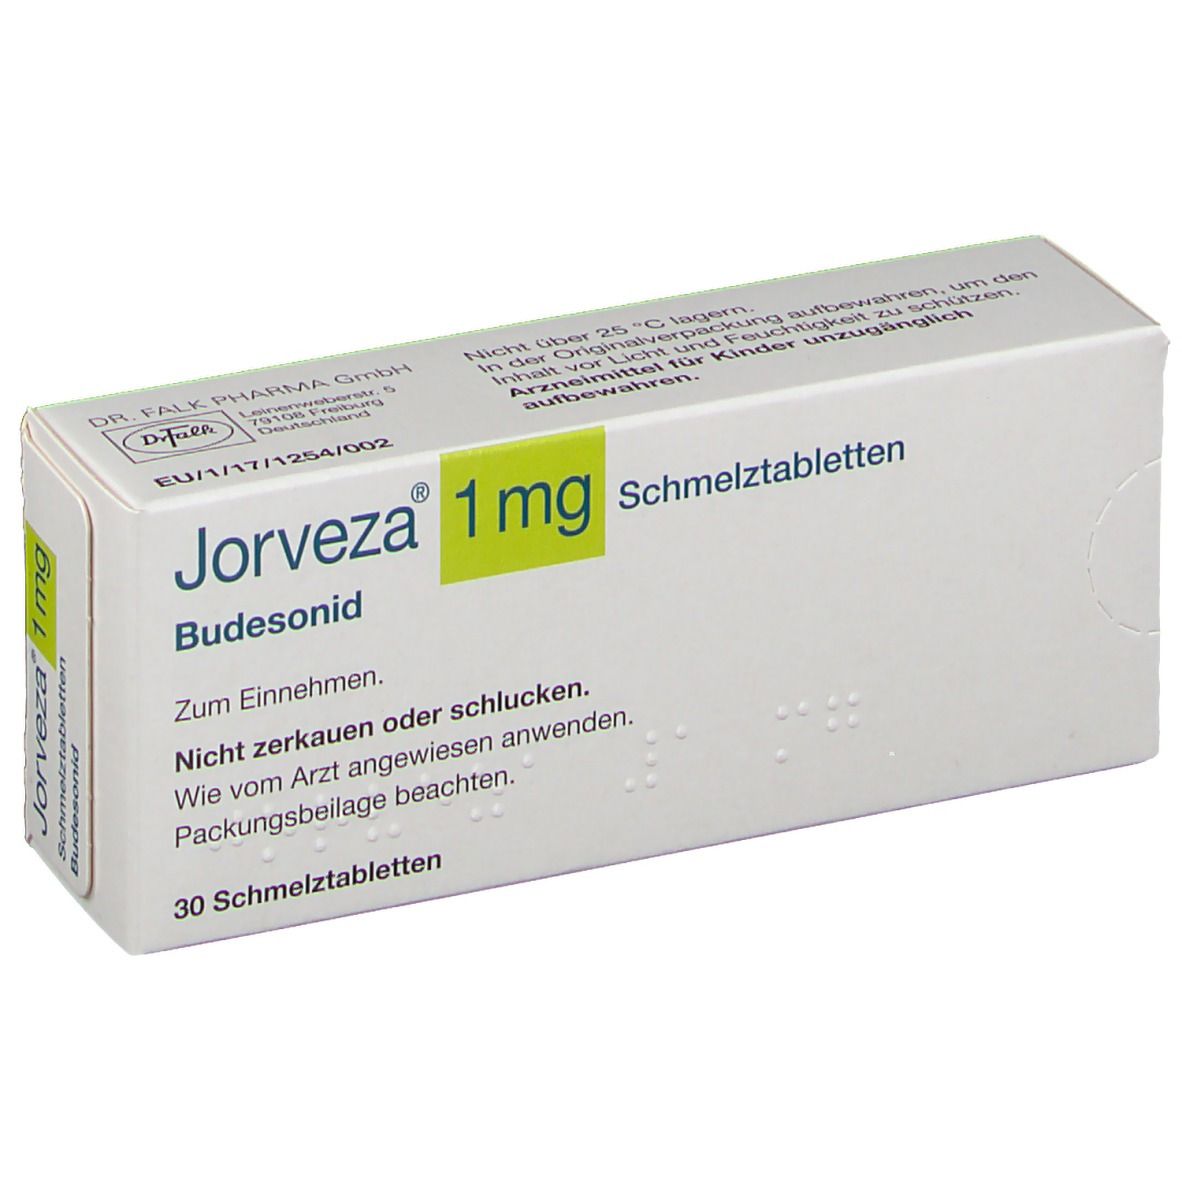 Jorveza® 1 mg